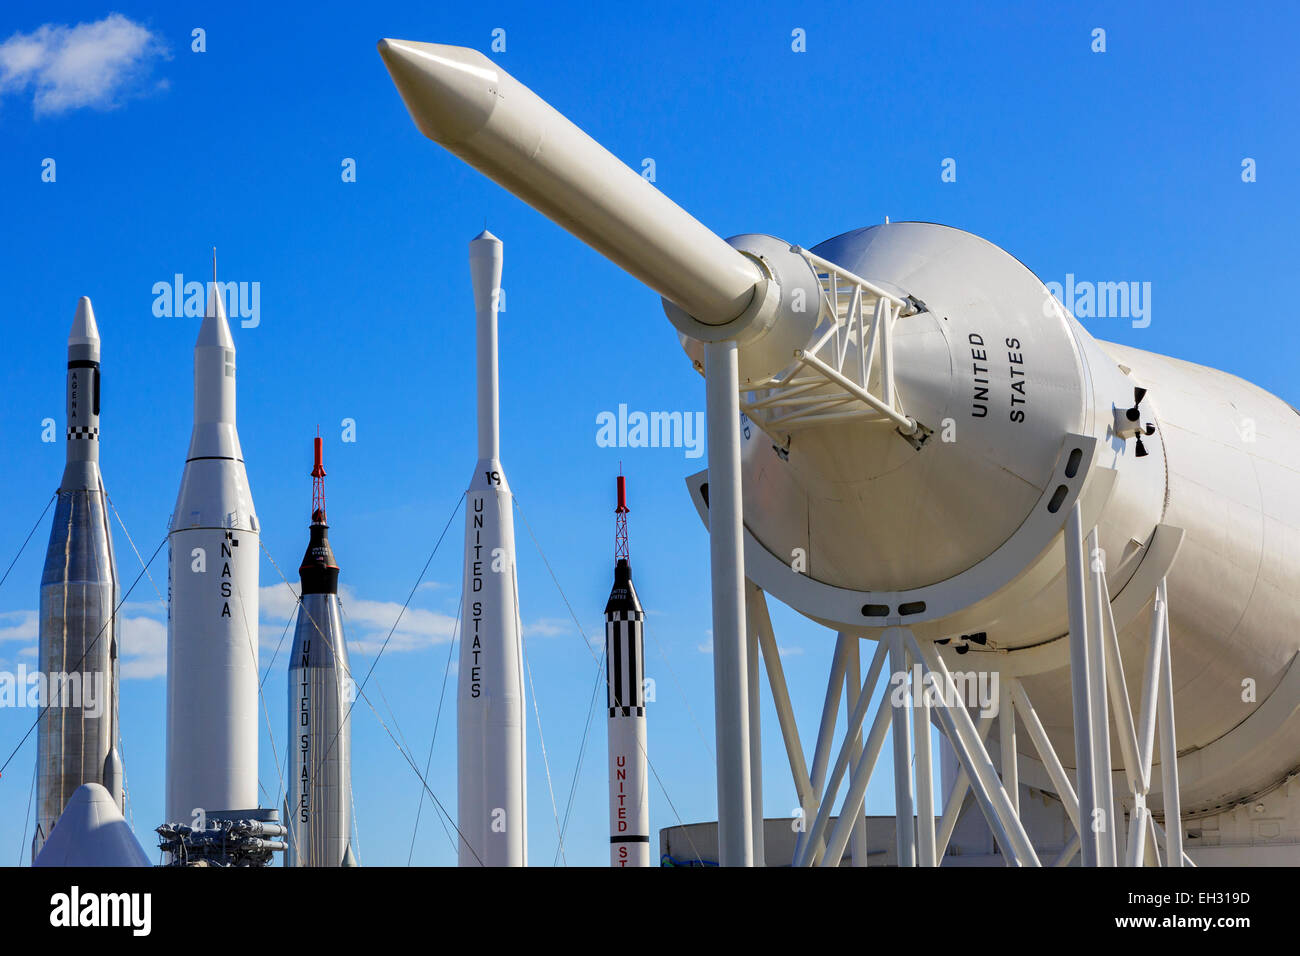 Giardino a razzo con smantellati missili balistici intercontinentali entro il Centro Spaziale della NASA, Cape Canaveral, in Florida, Stati Uniti d'America Foto Stock